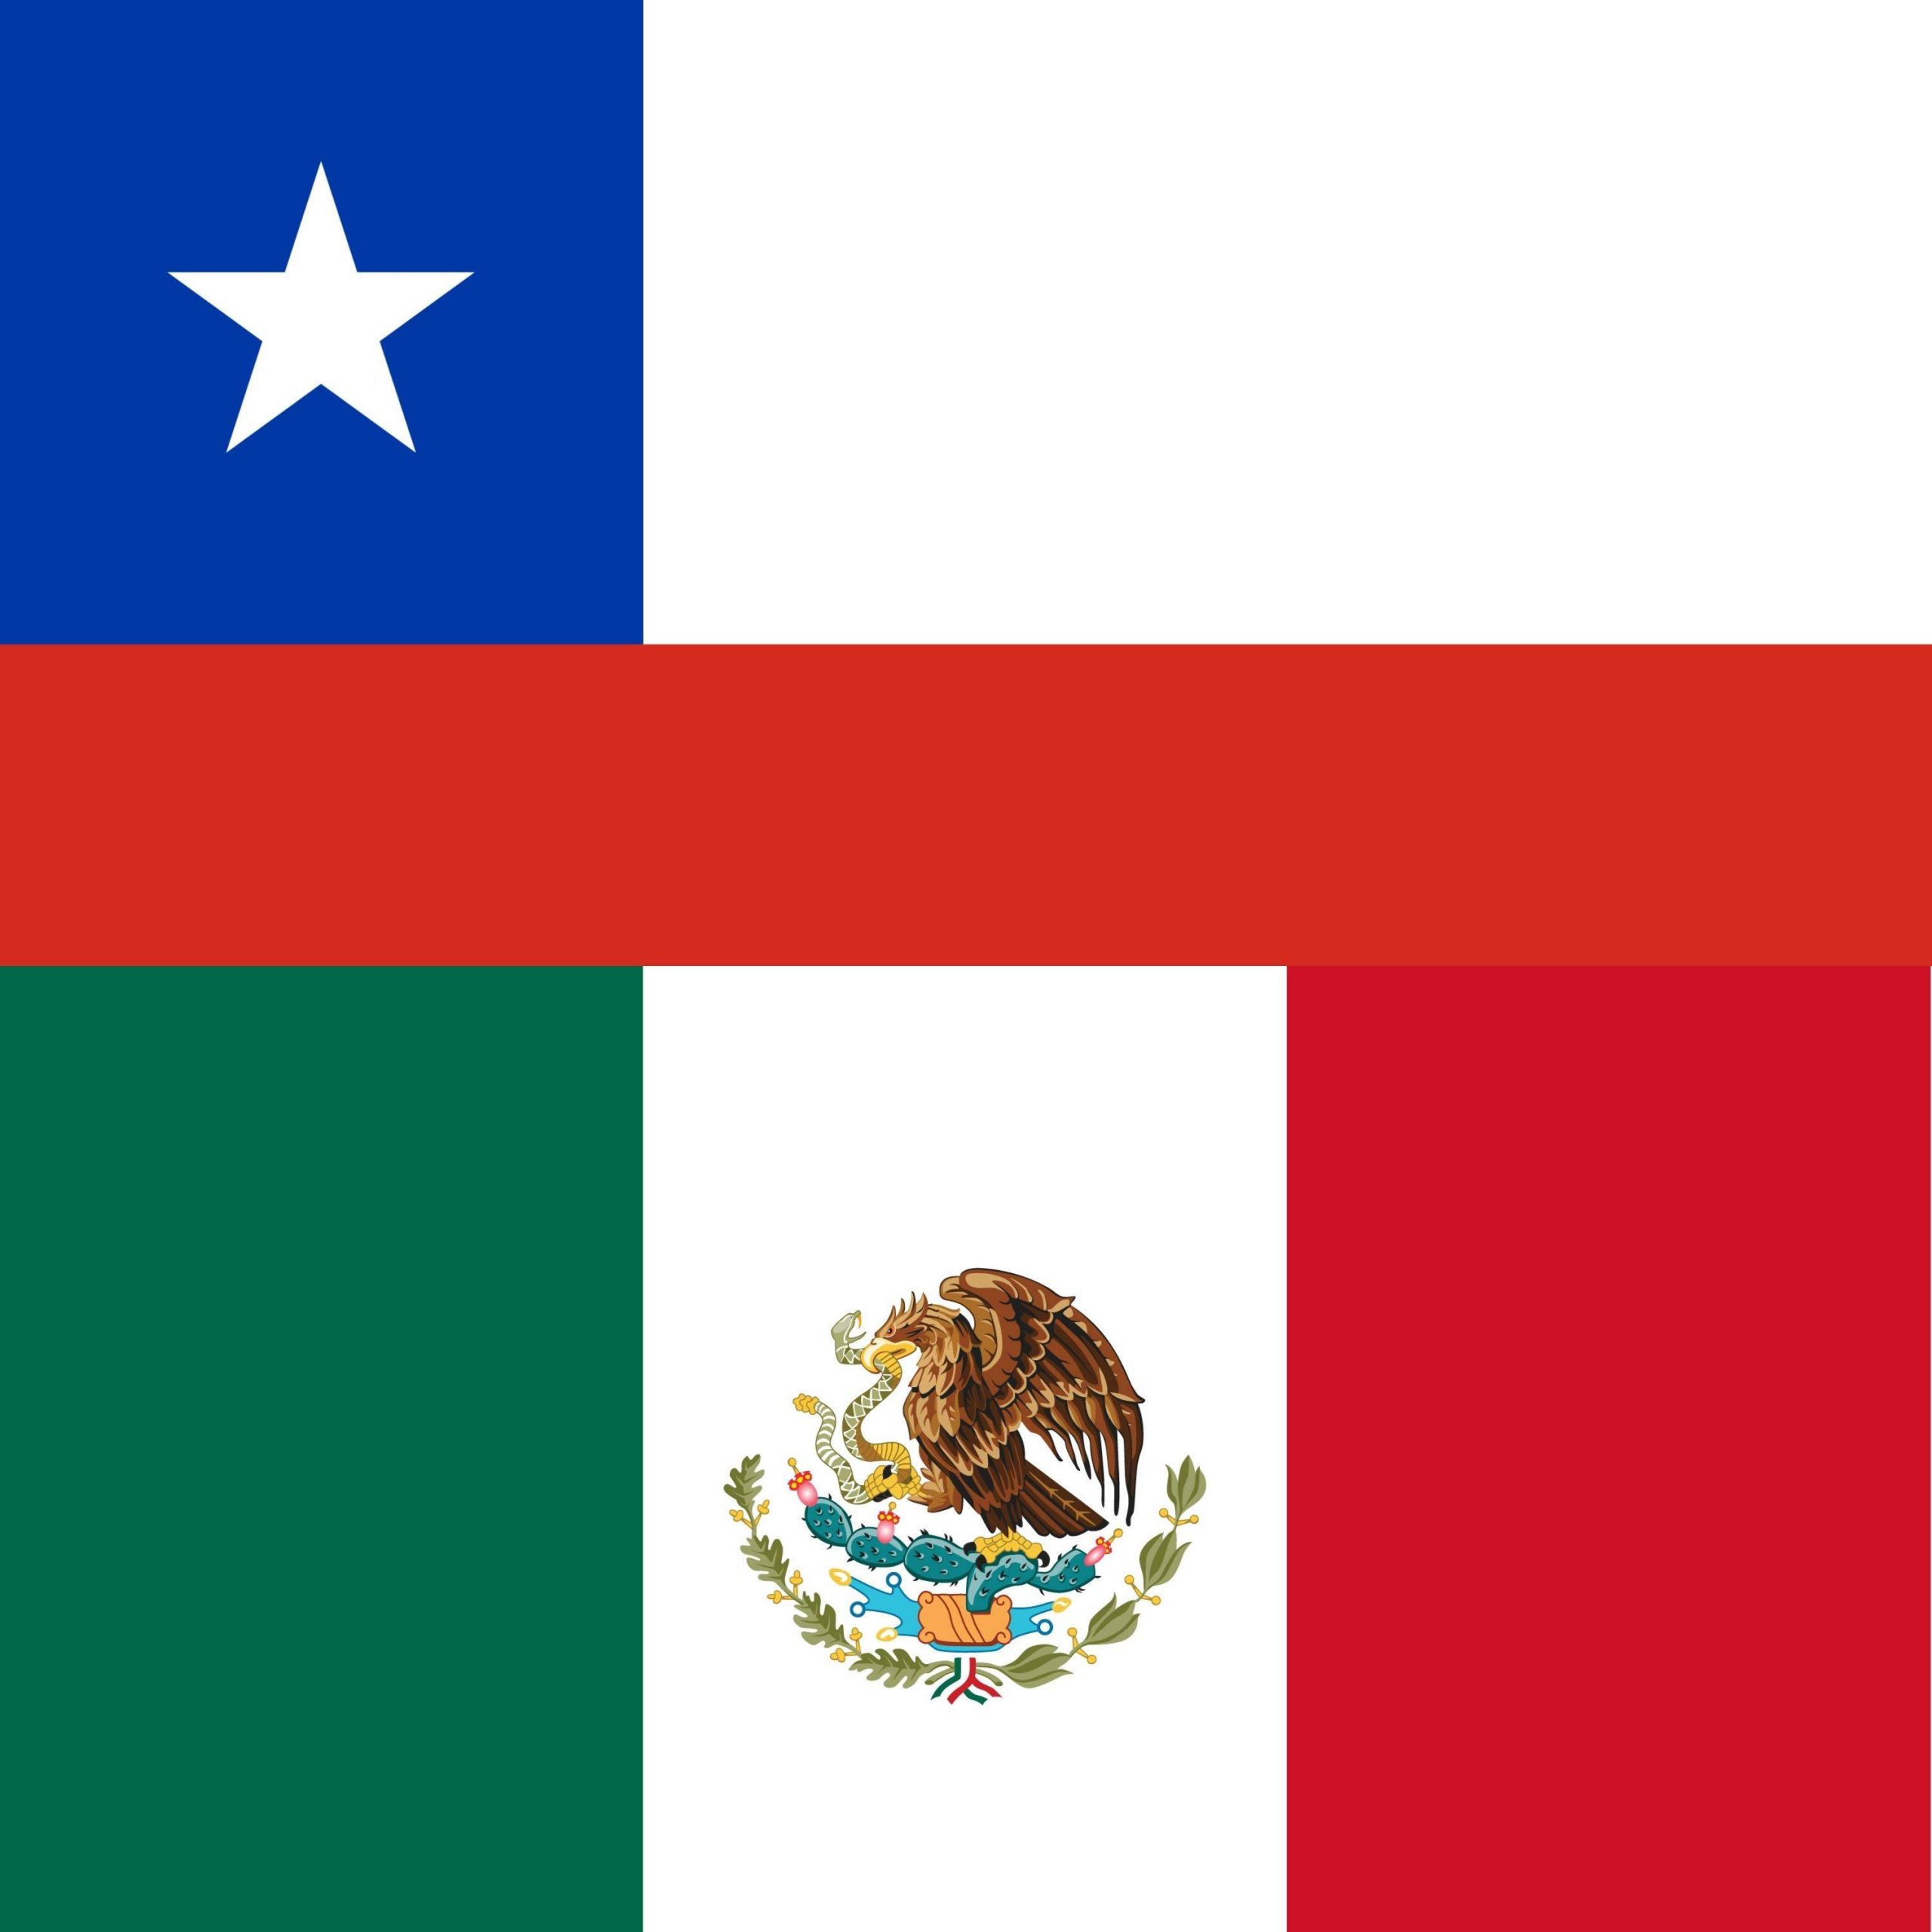 Chile vs Mexico